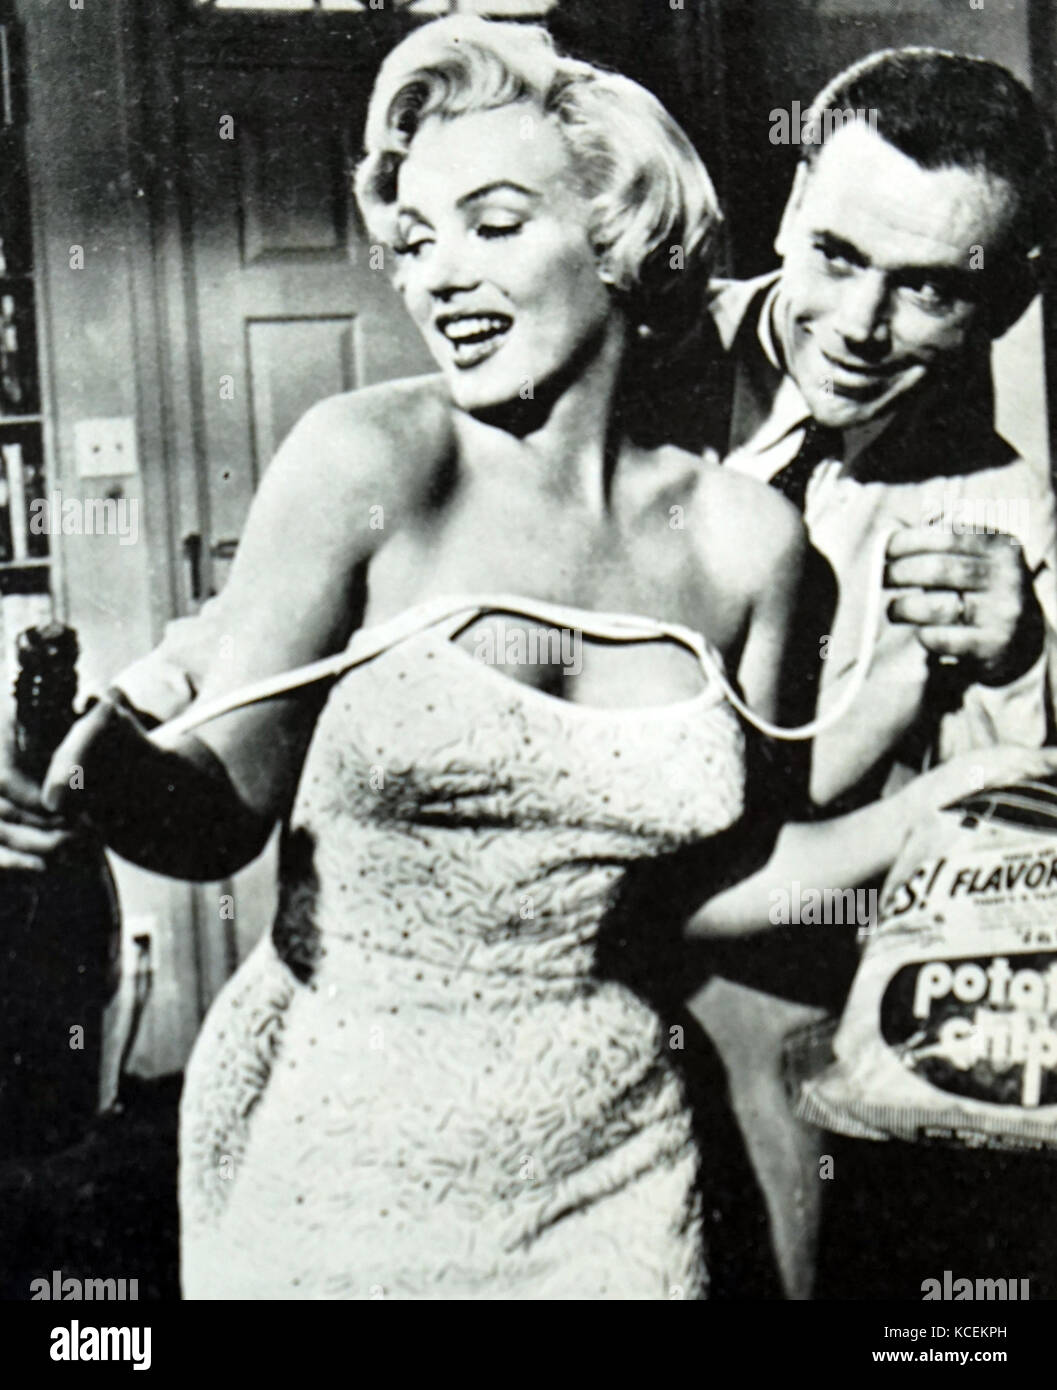 Szene aus "Das verflixte Siebte Jahr" mit Marilyn Monroe (1926-1962) eine US-amerikanische Schauspielerin und Tom Ewell (1909-1994), ein amerikanischer Film, Bühne und Schauspieler. Vom 20. Jahrhundert Stockfoto